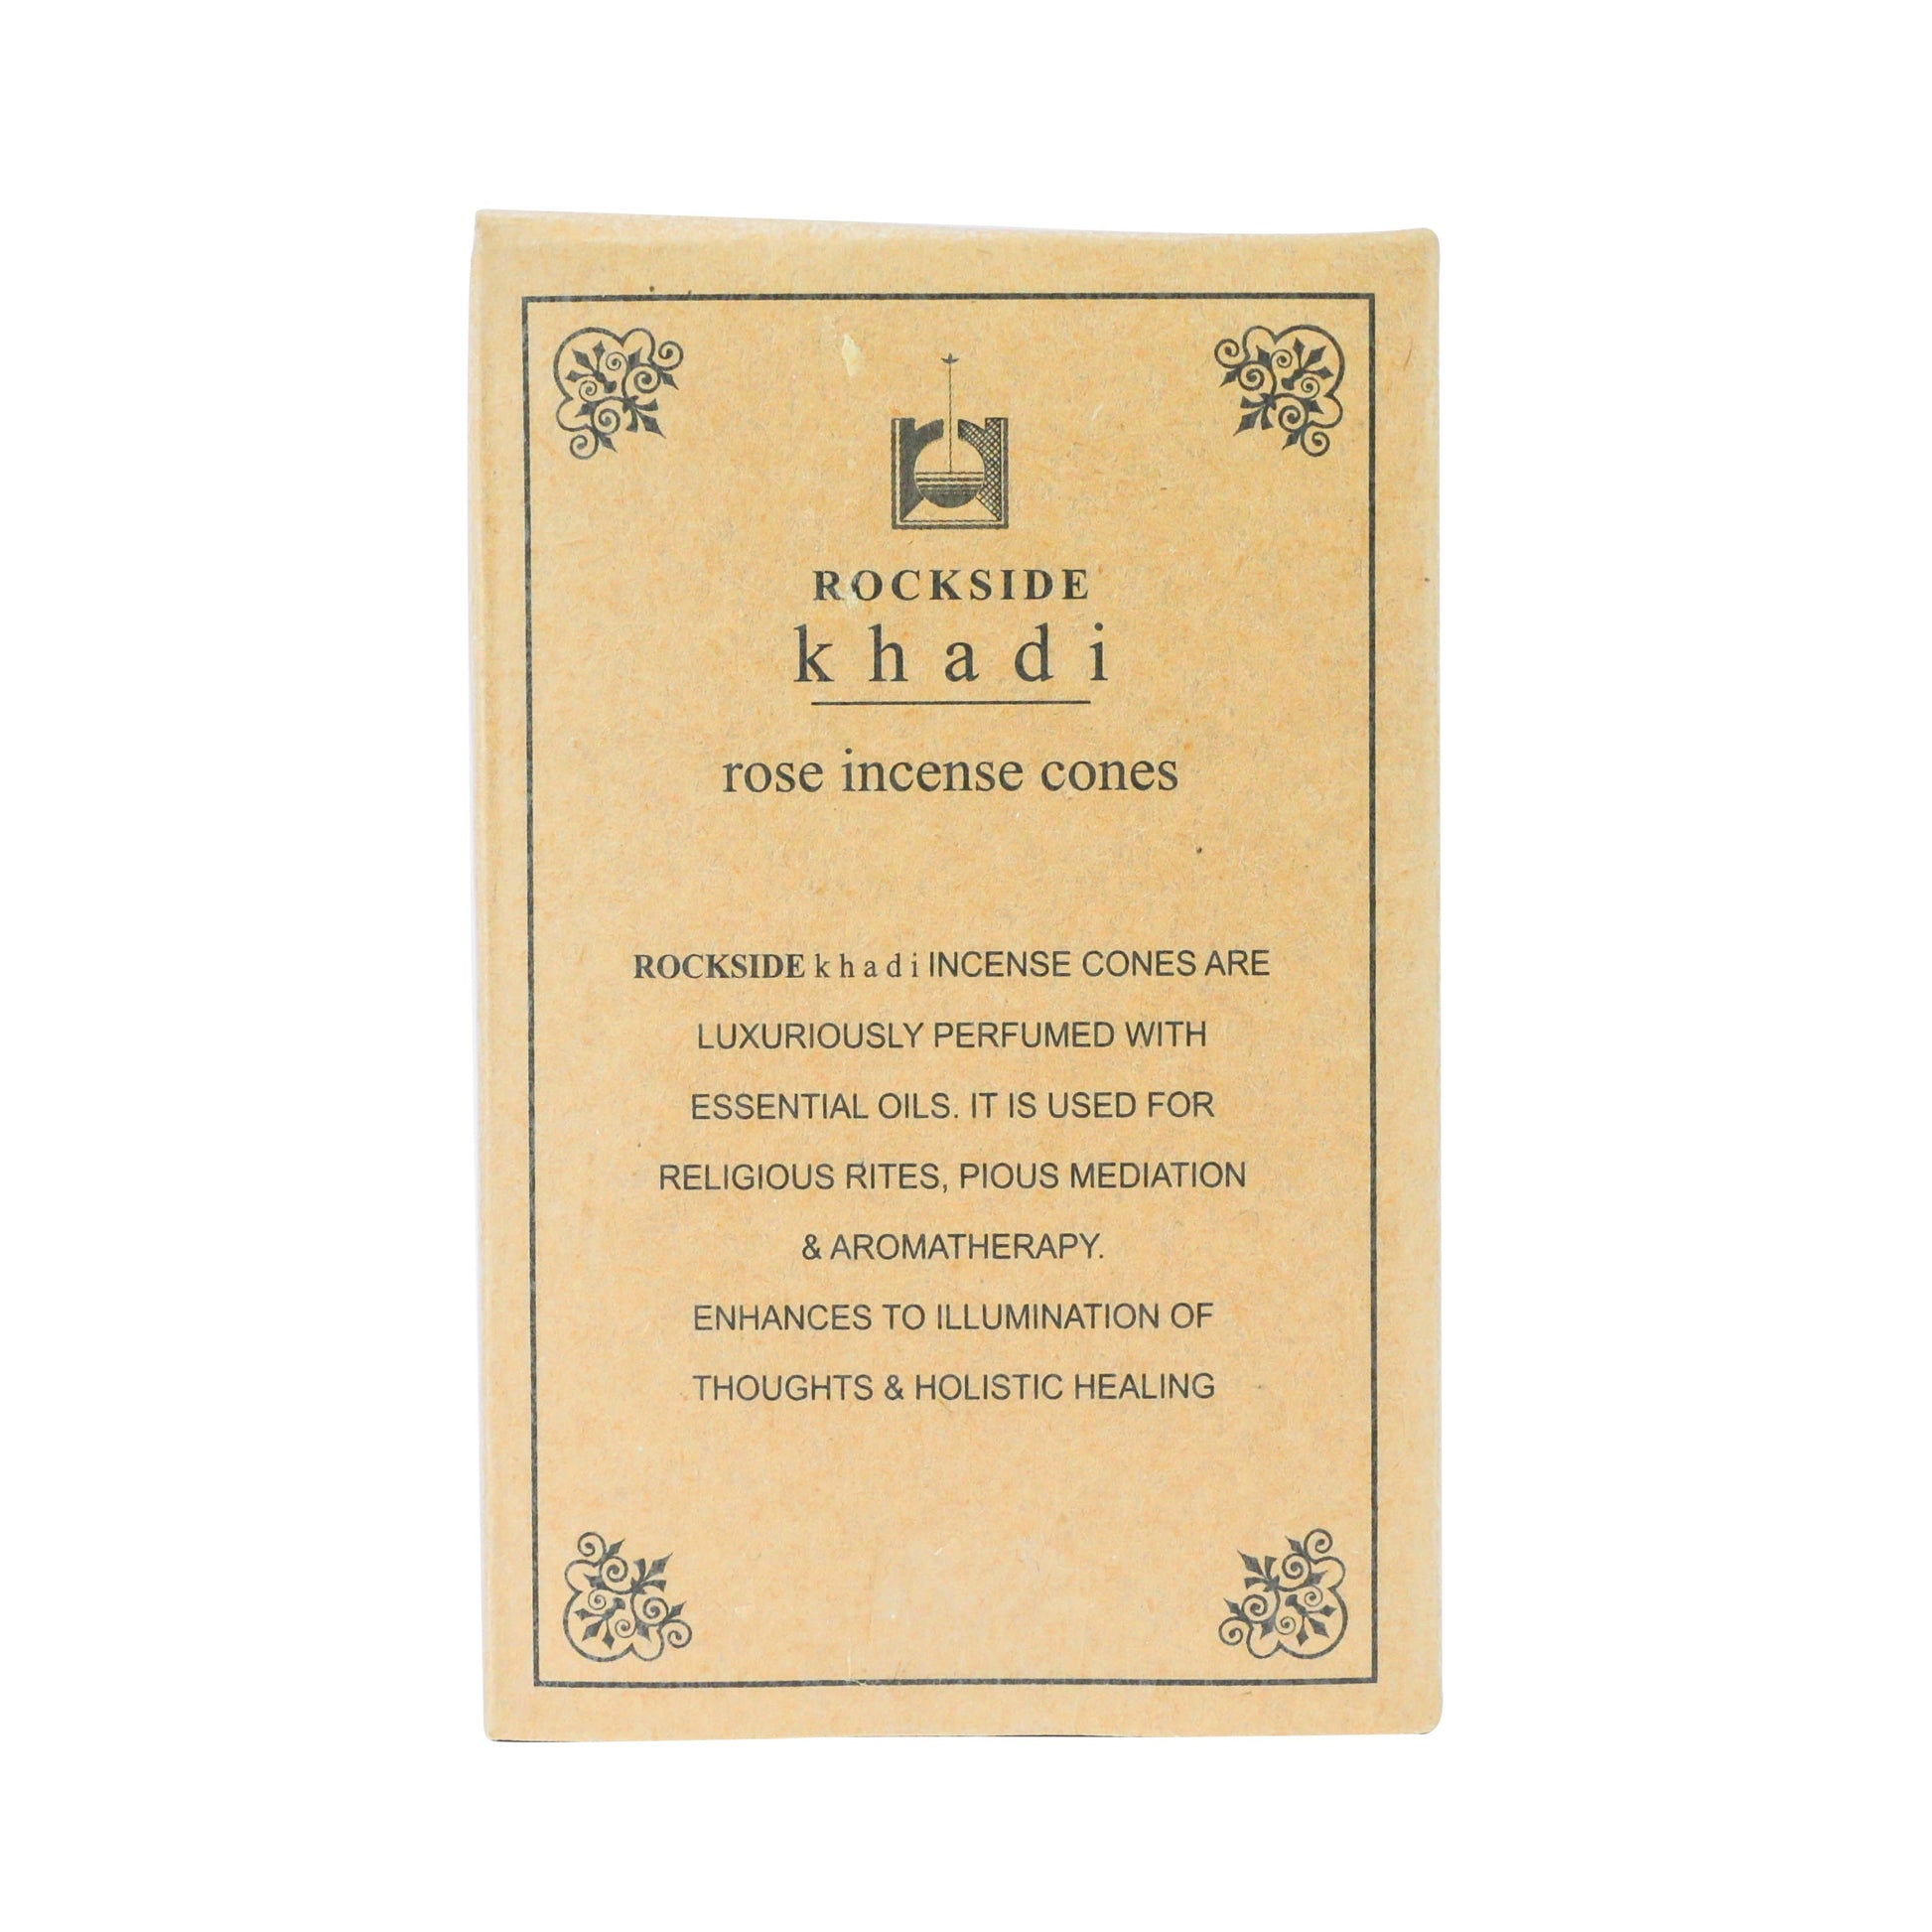 Khadi products Delhi